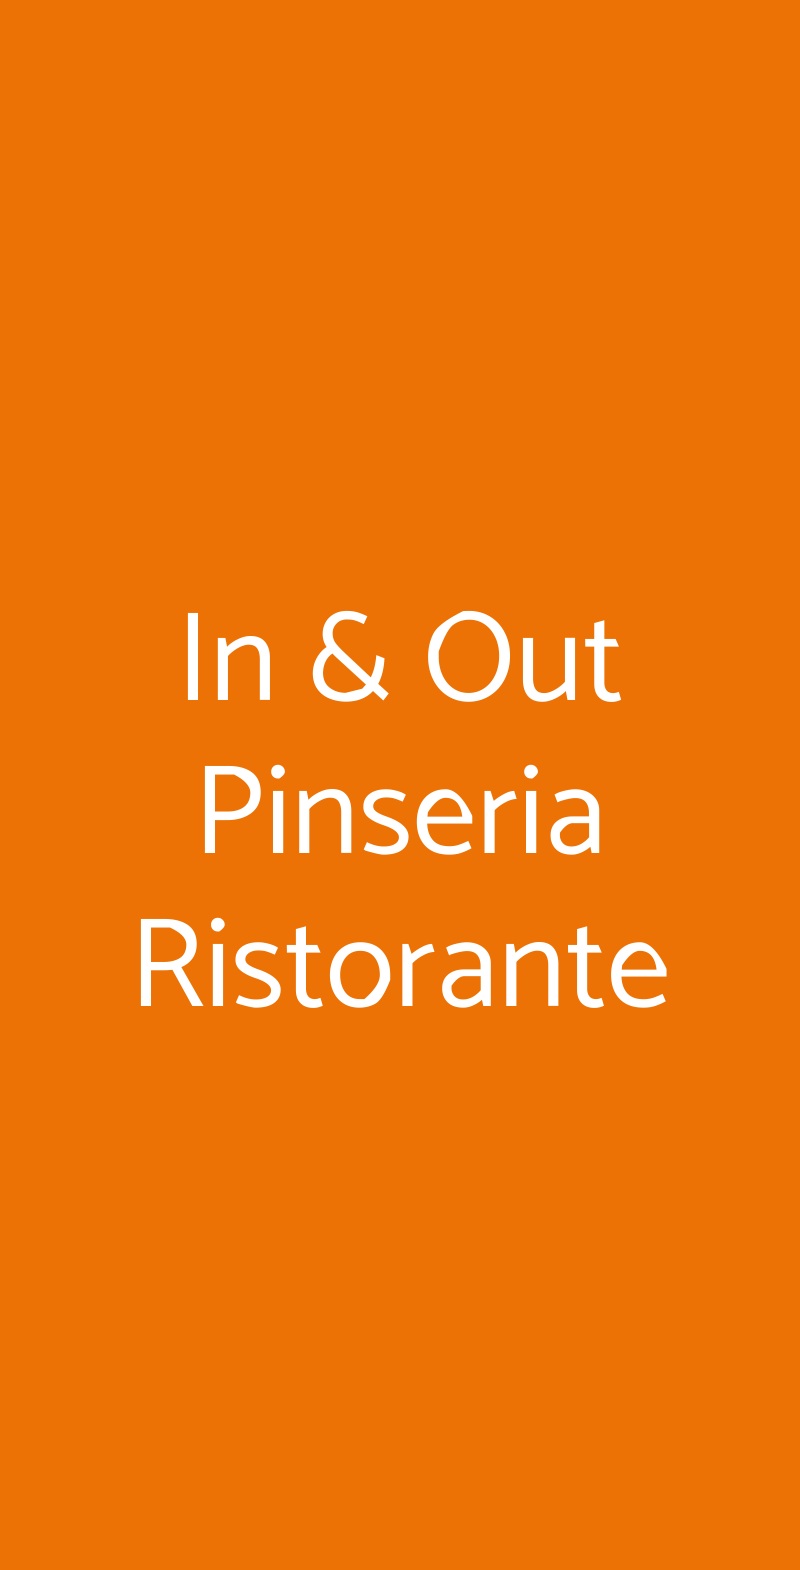 In & Out Pinseria Ristorante Roma menù 1 pagina